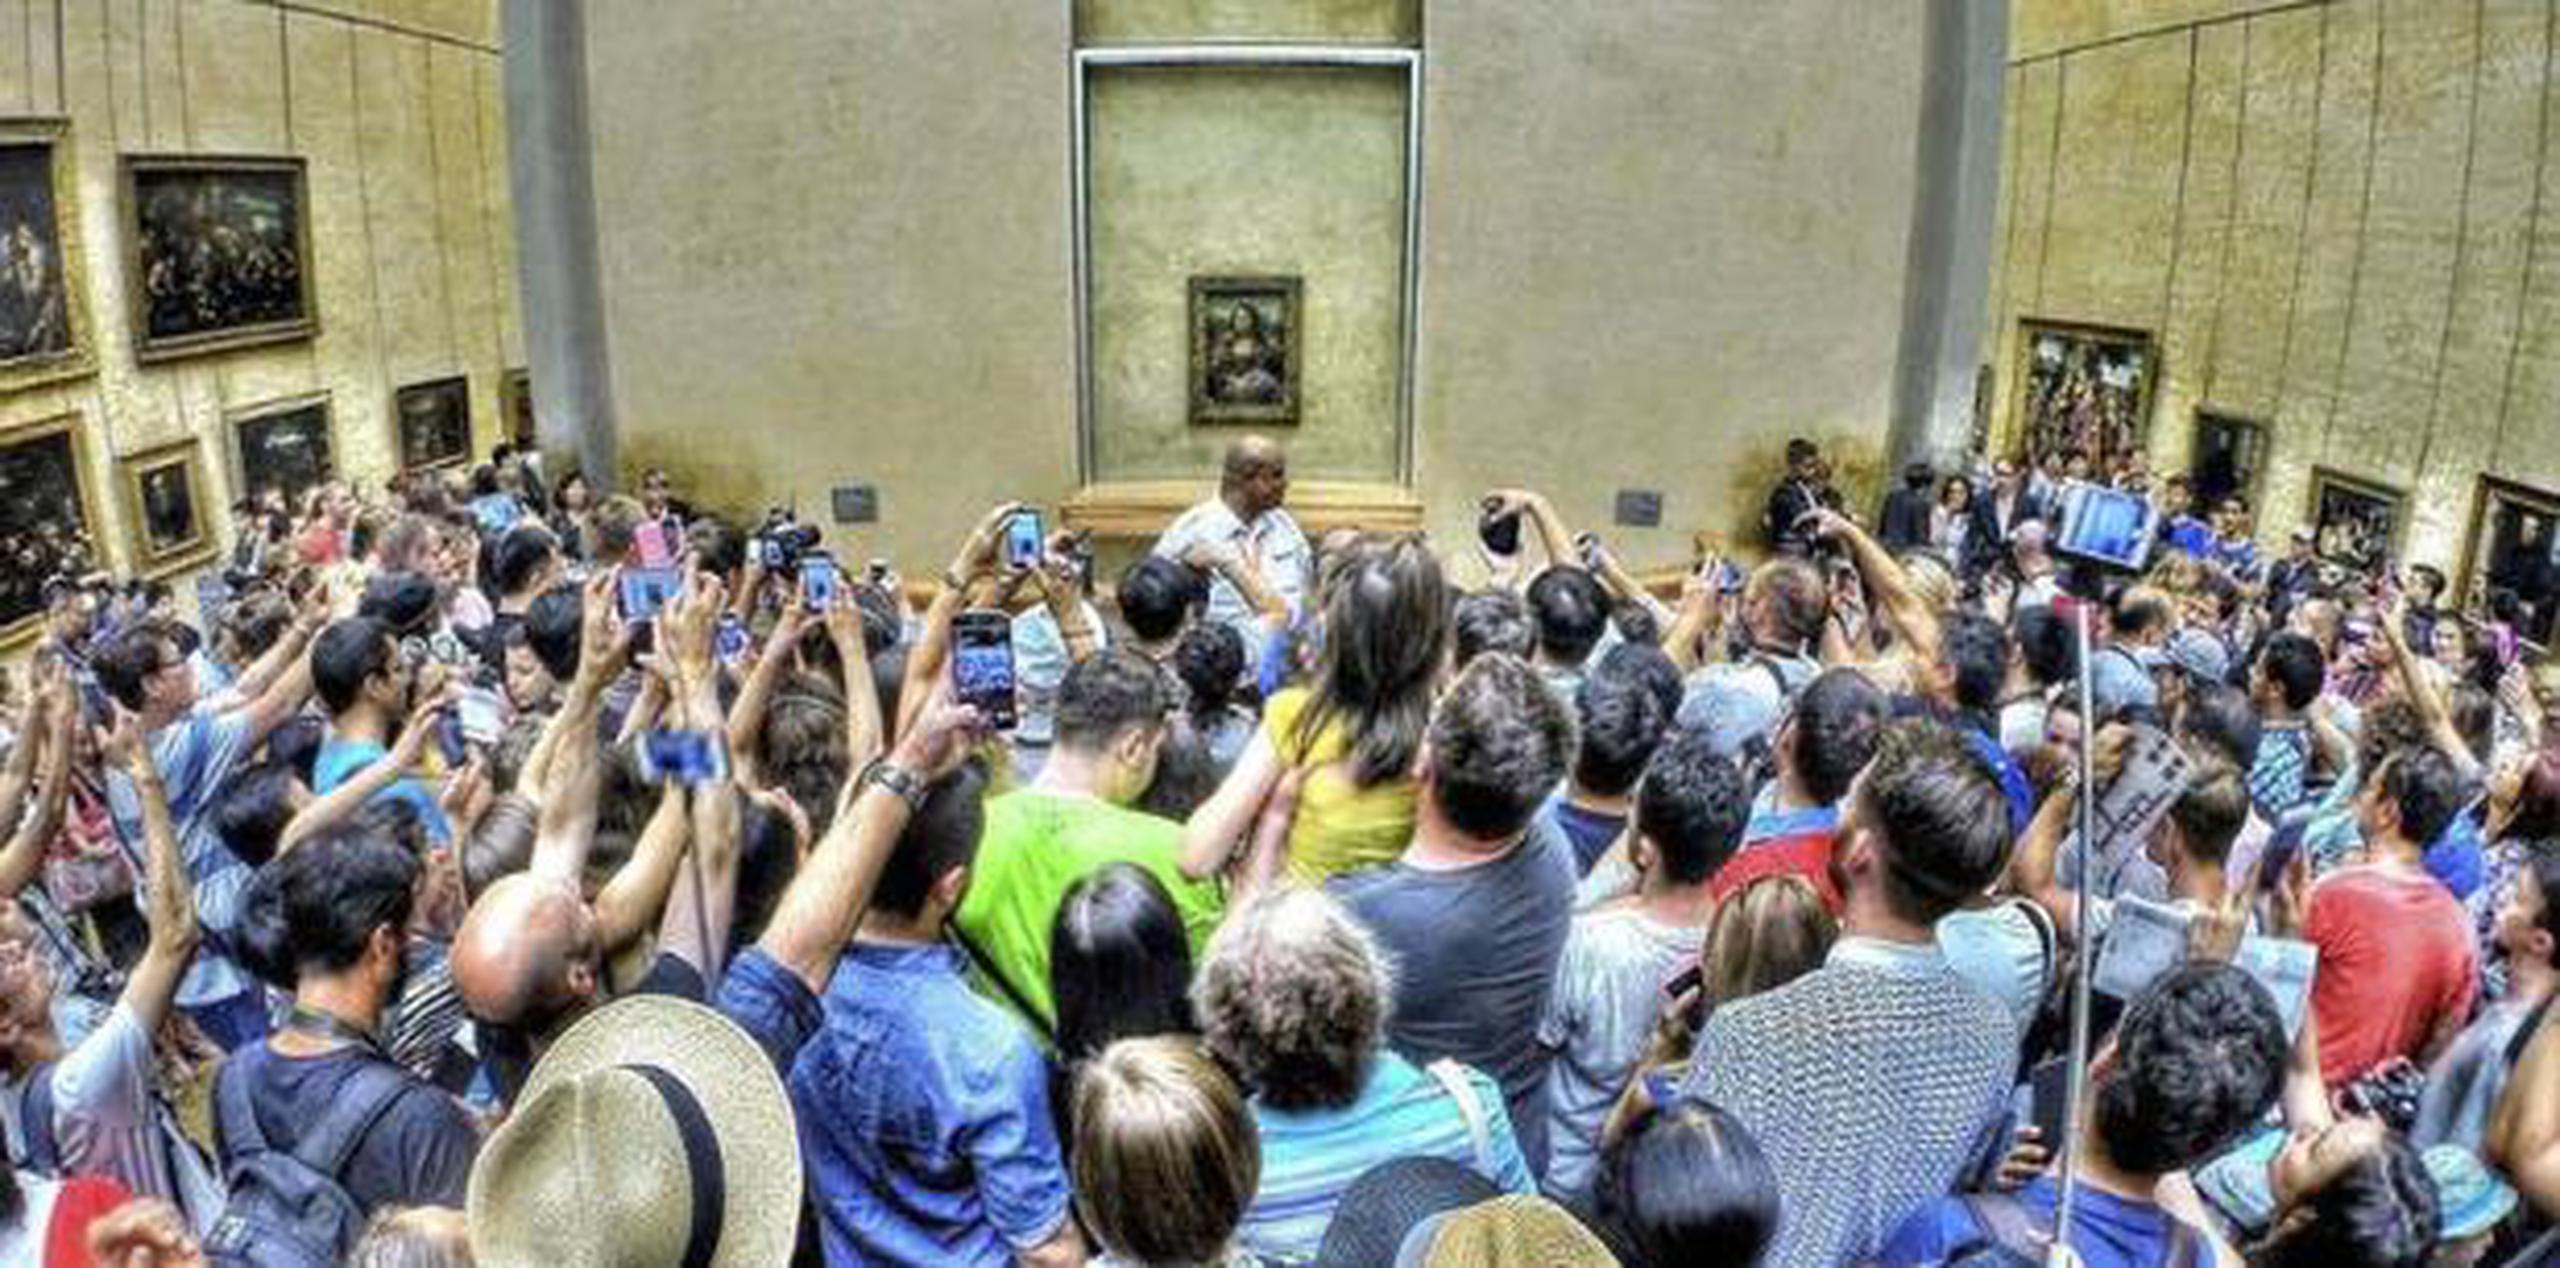 La mayoría de los visitantes hace una fila de una hora para poder observar la Monna Lisa por unos tres minutos, incluyendo el consabido "selfie". (La Nación)